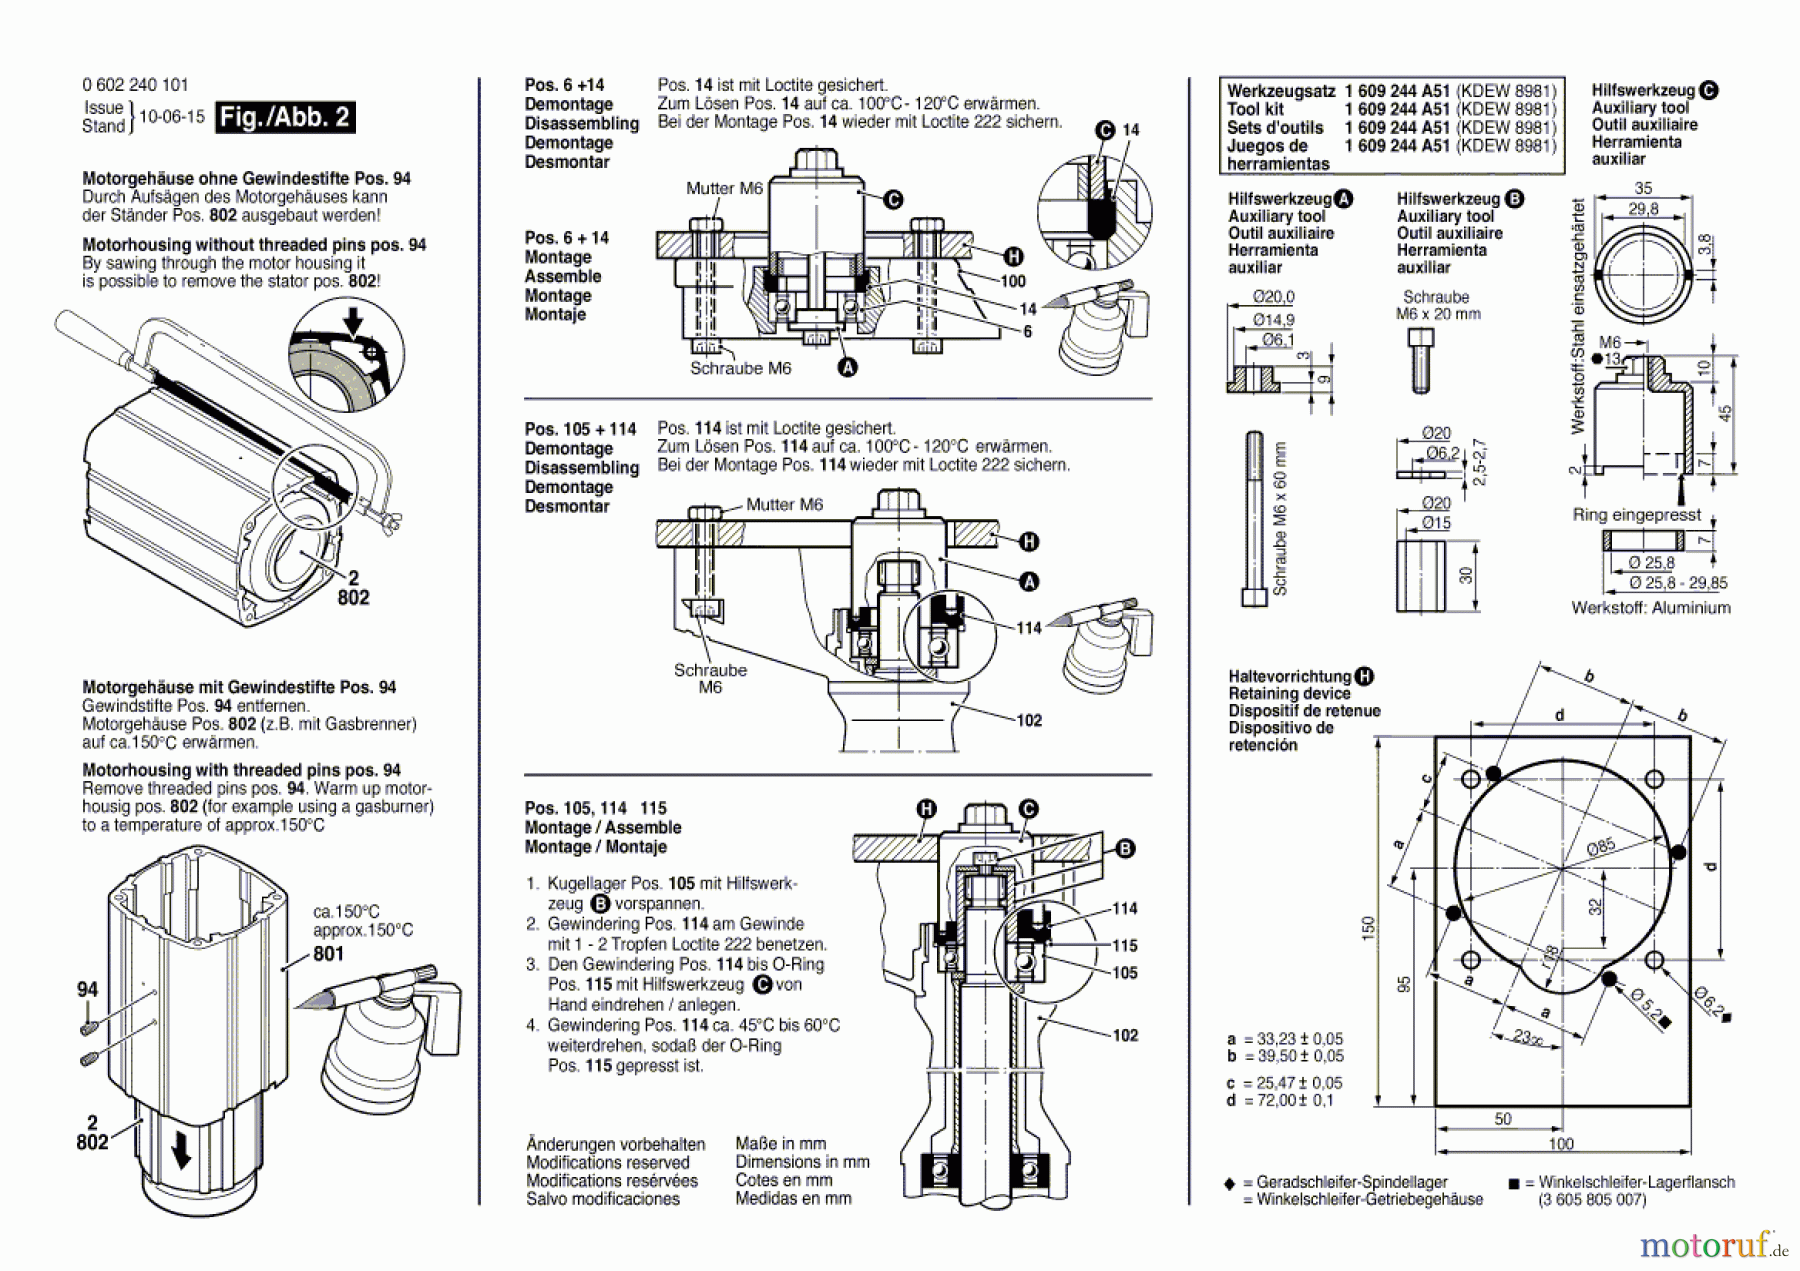  Bosch Werkzeug Hf-Geradschleifer GERADSCHLEIFER ---- Seite 2